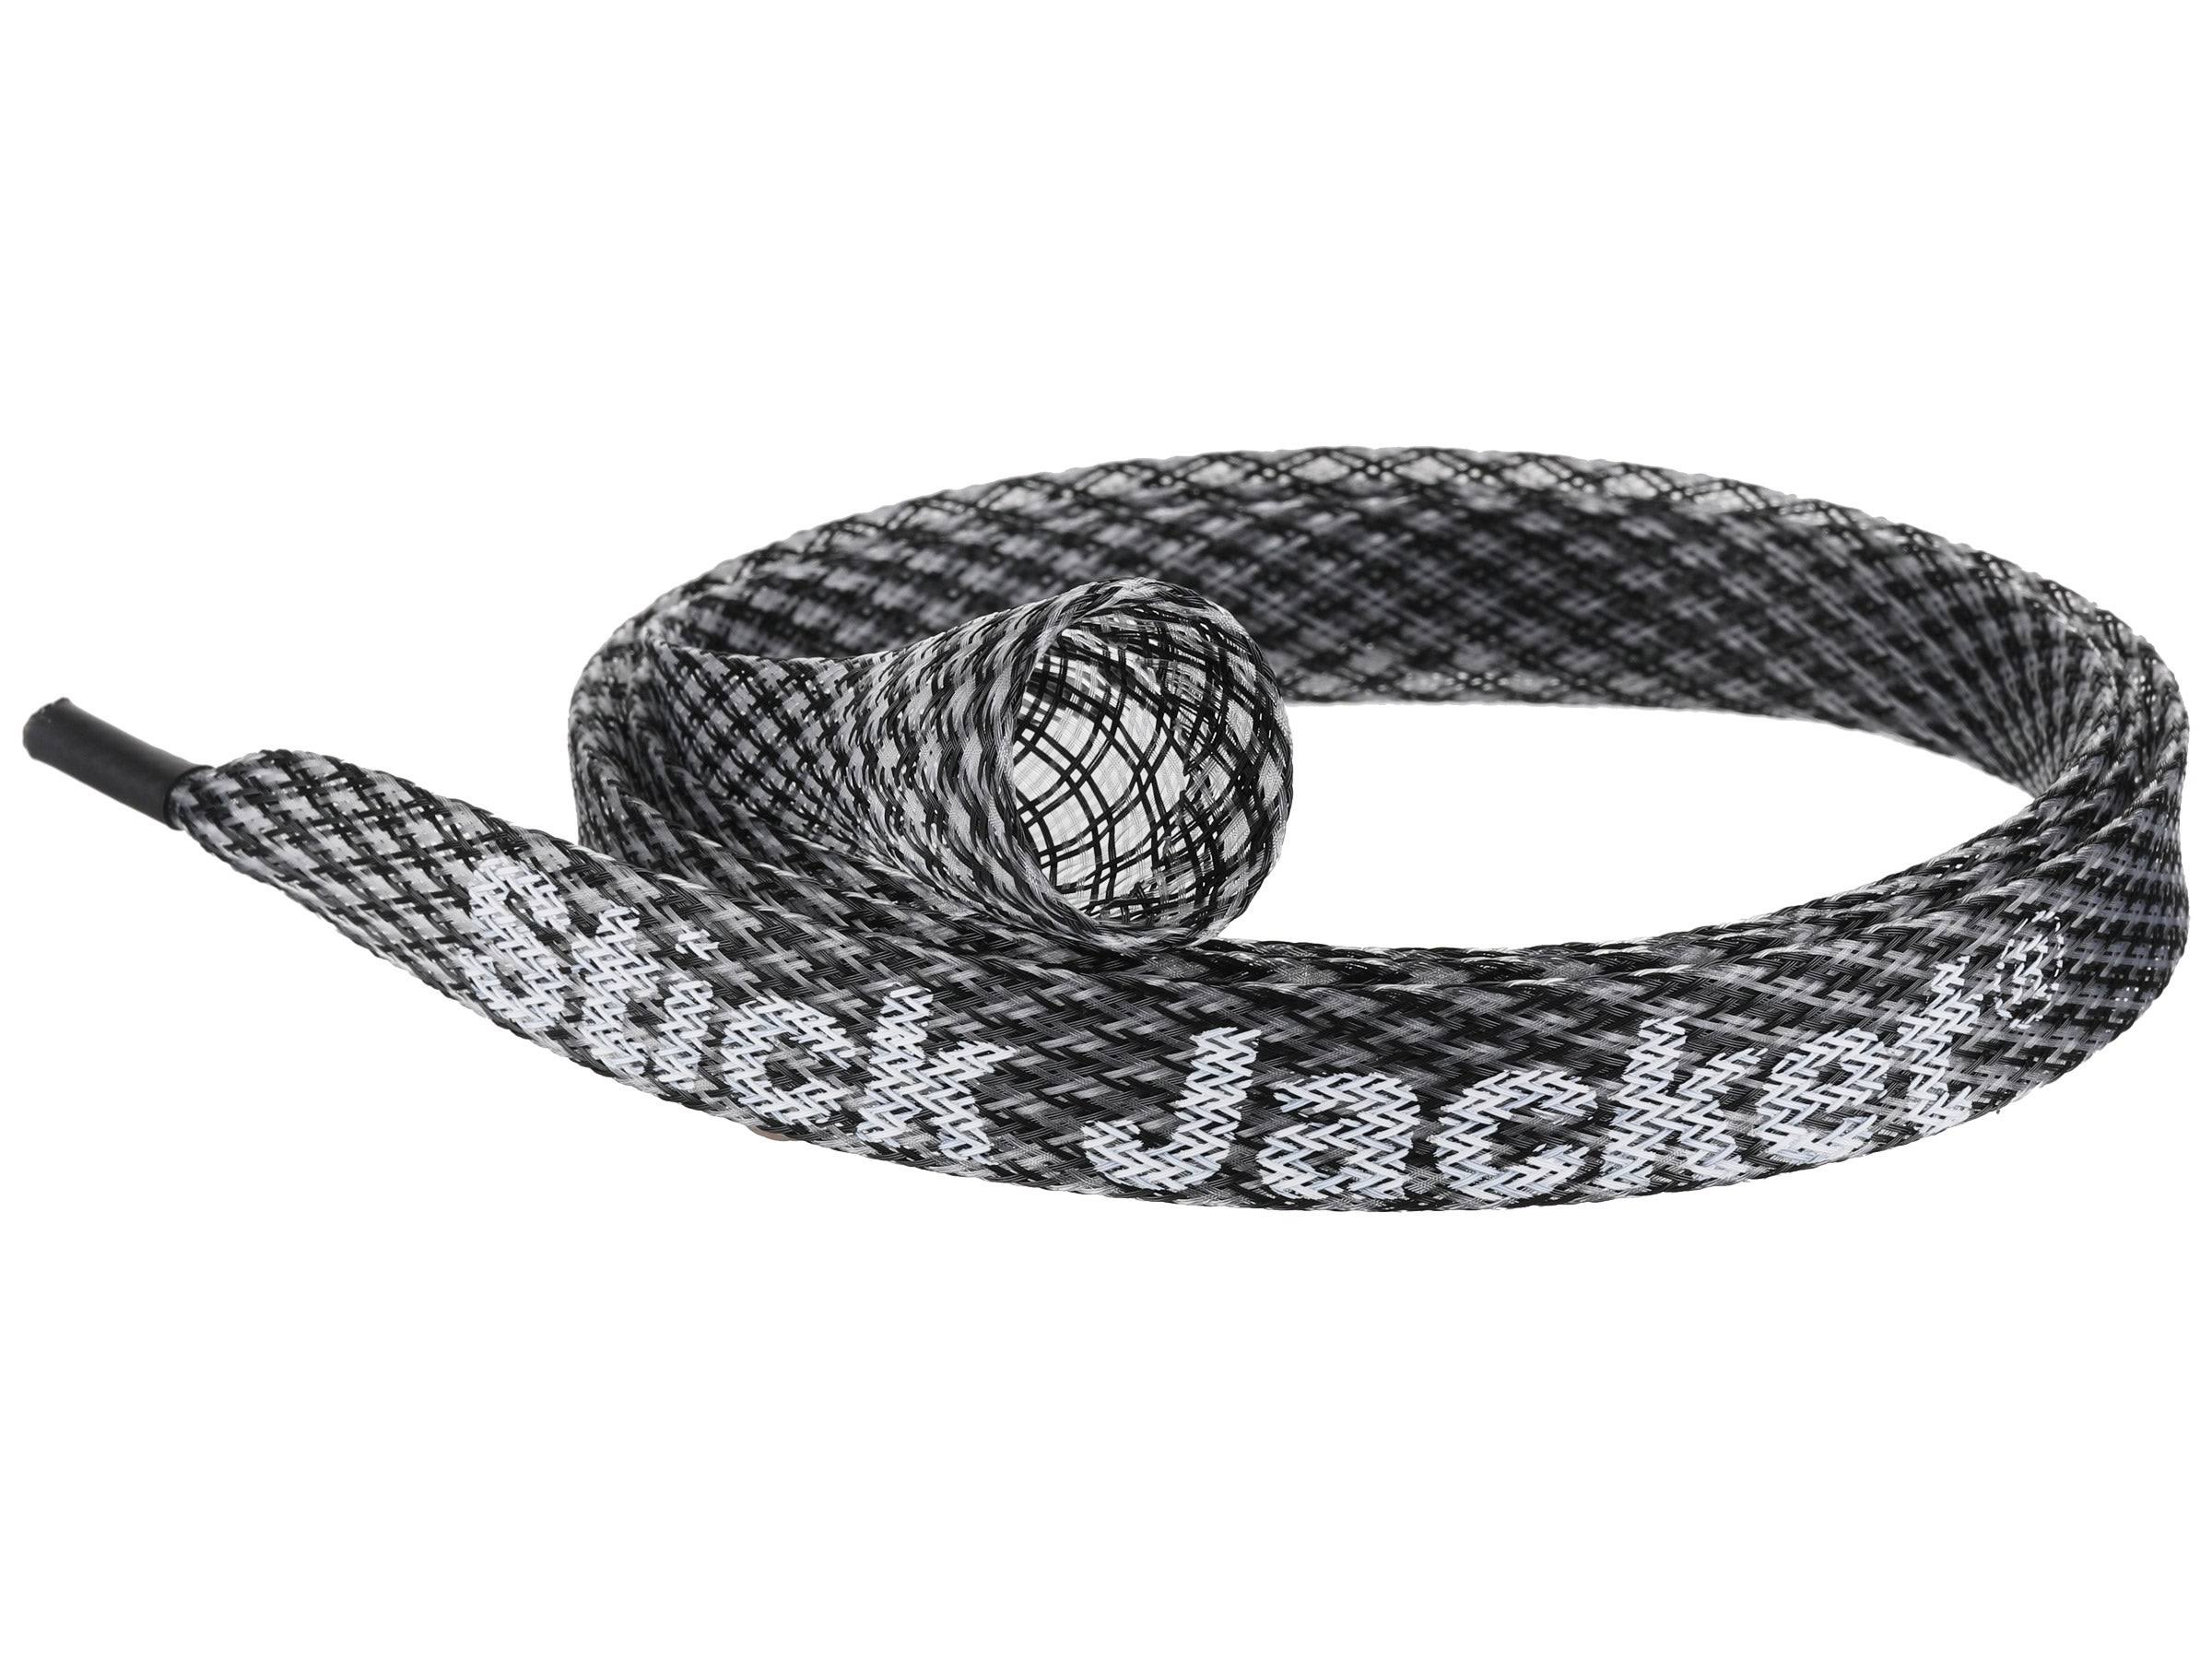 Stick Jacket Fishing Rod Cover | Boating & Fishing